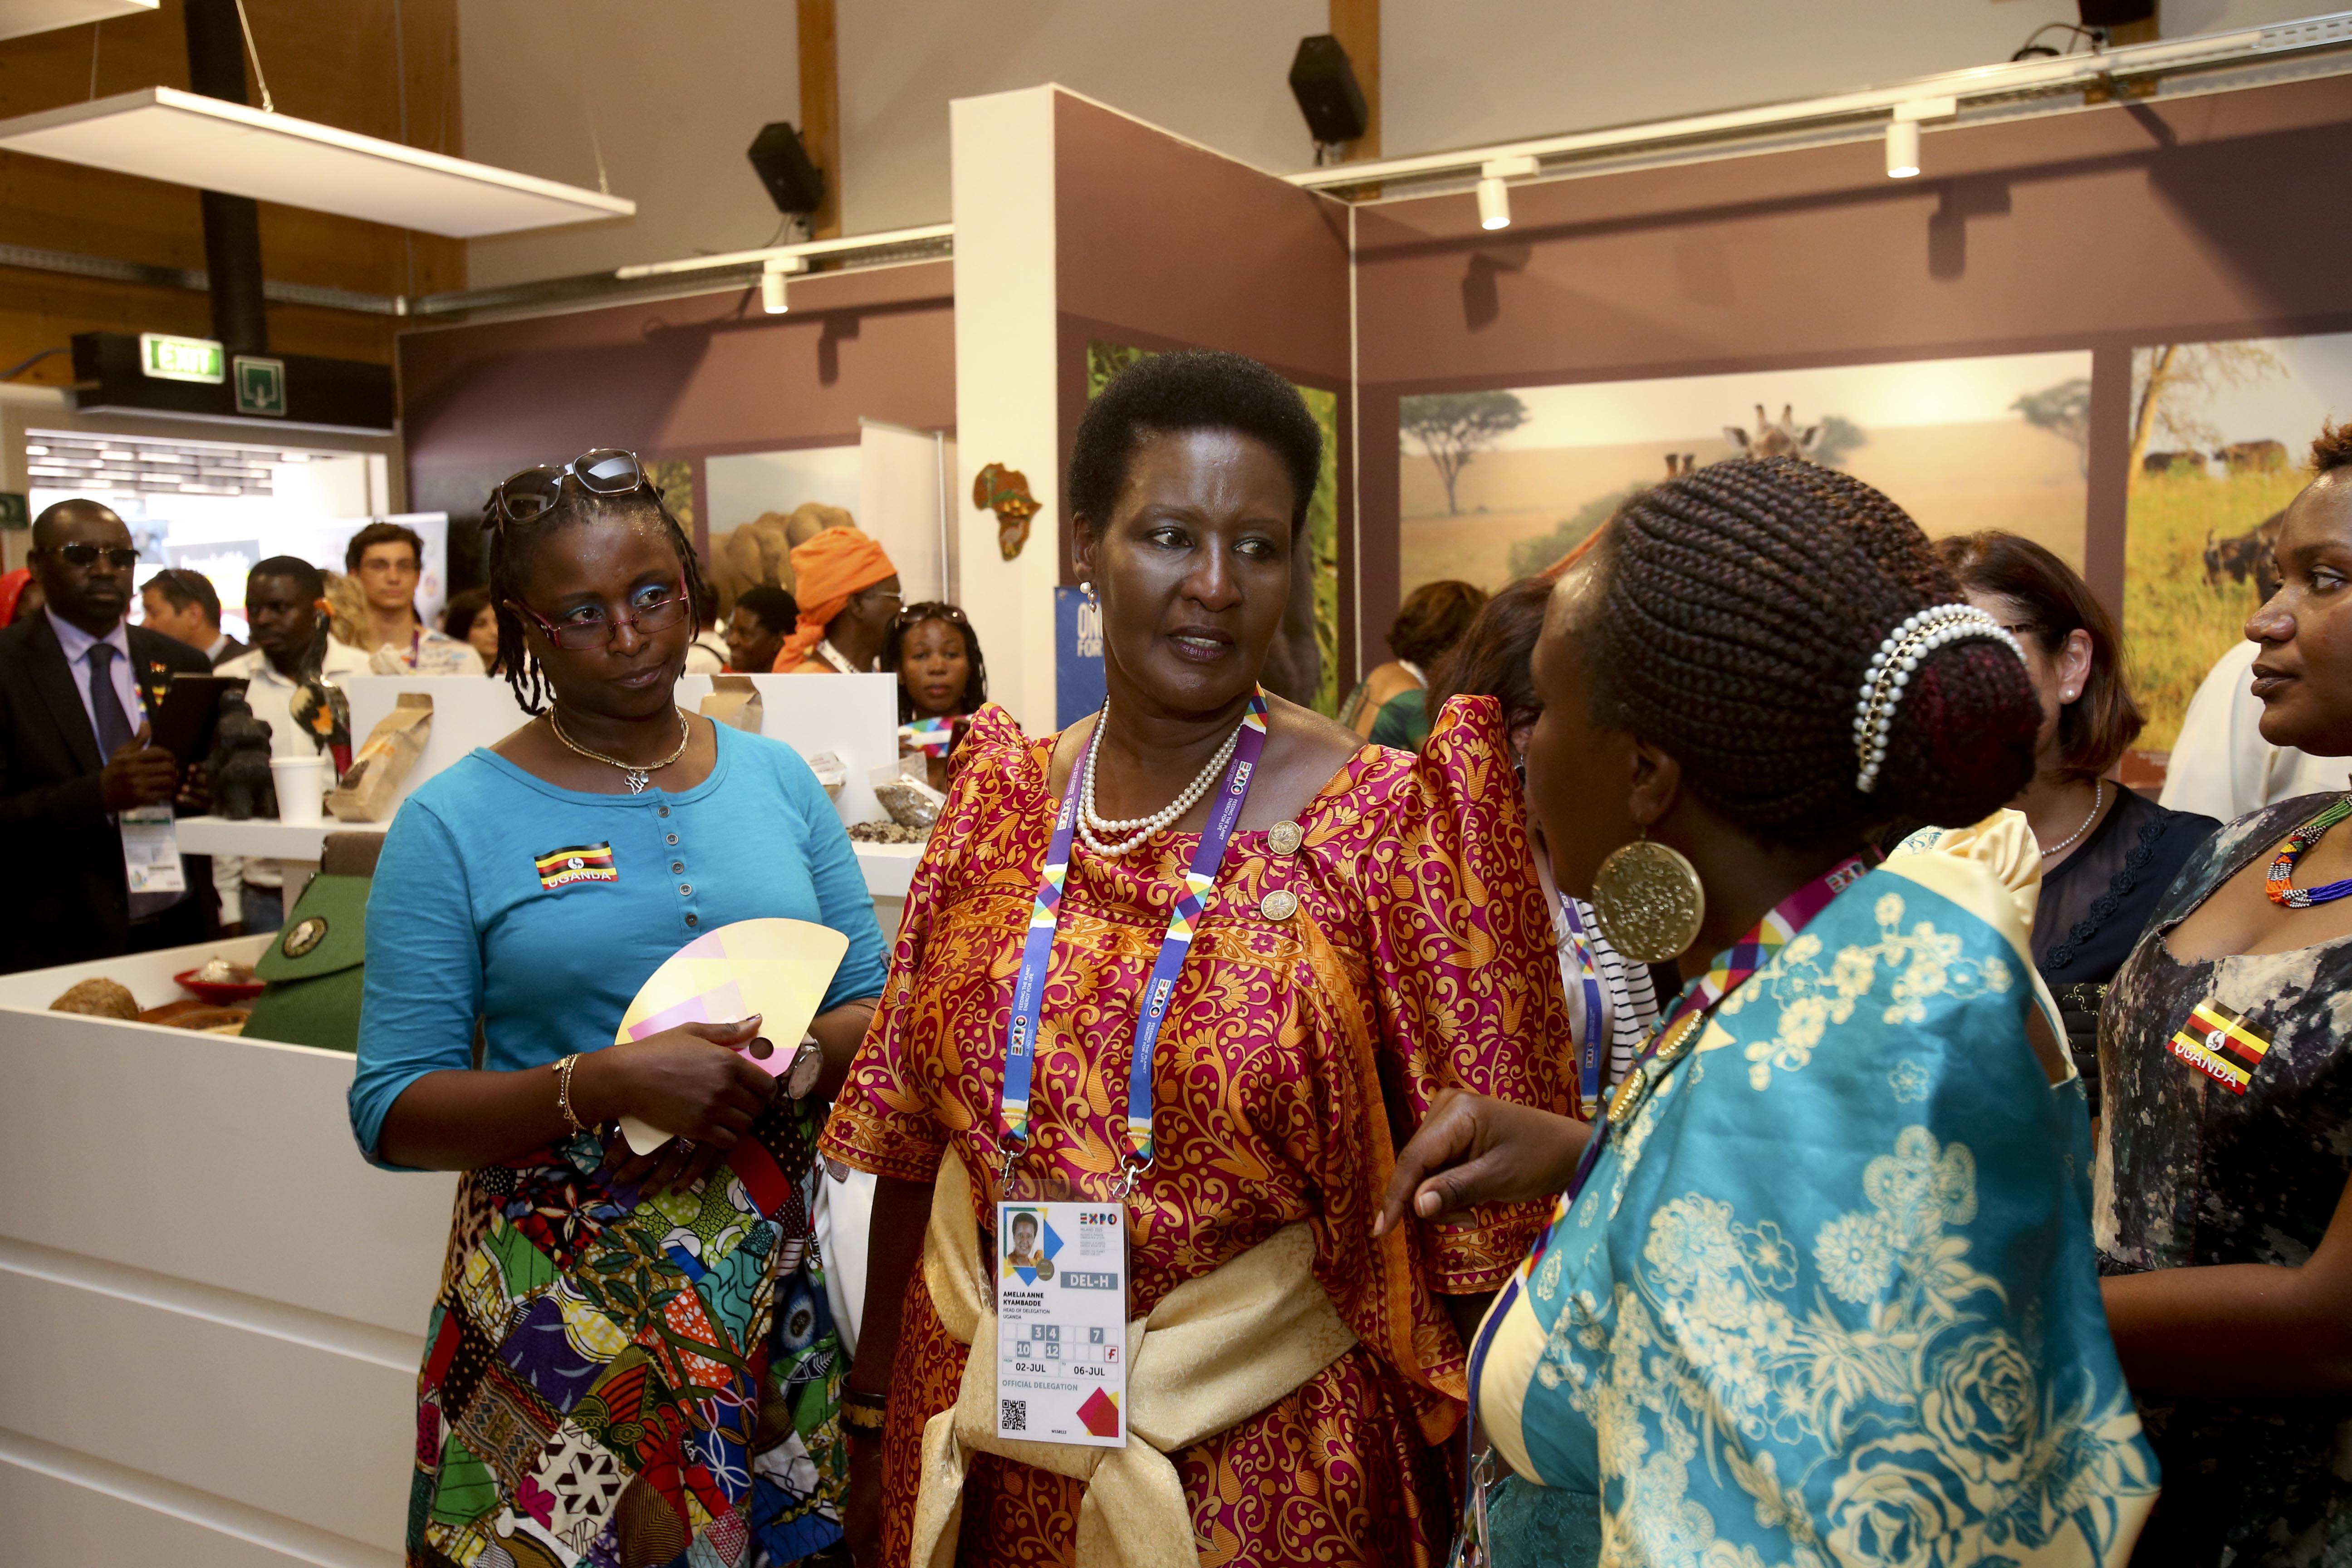 L'Uganda festeggia il suo National day a Expo